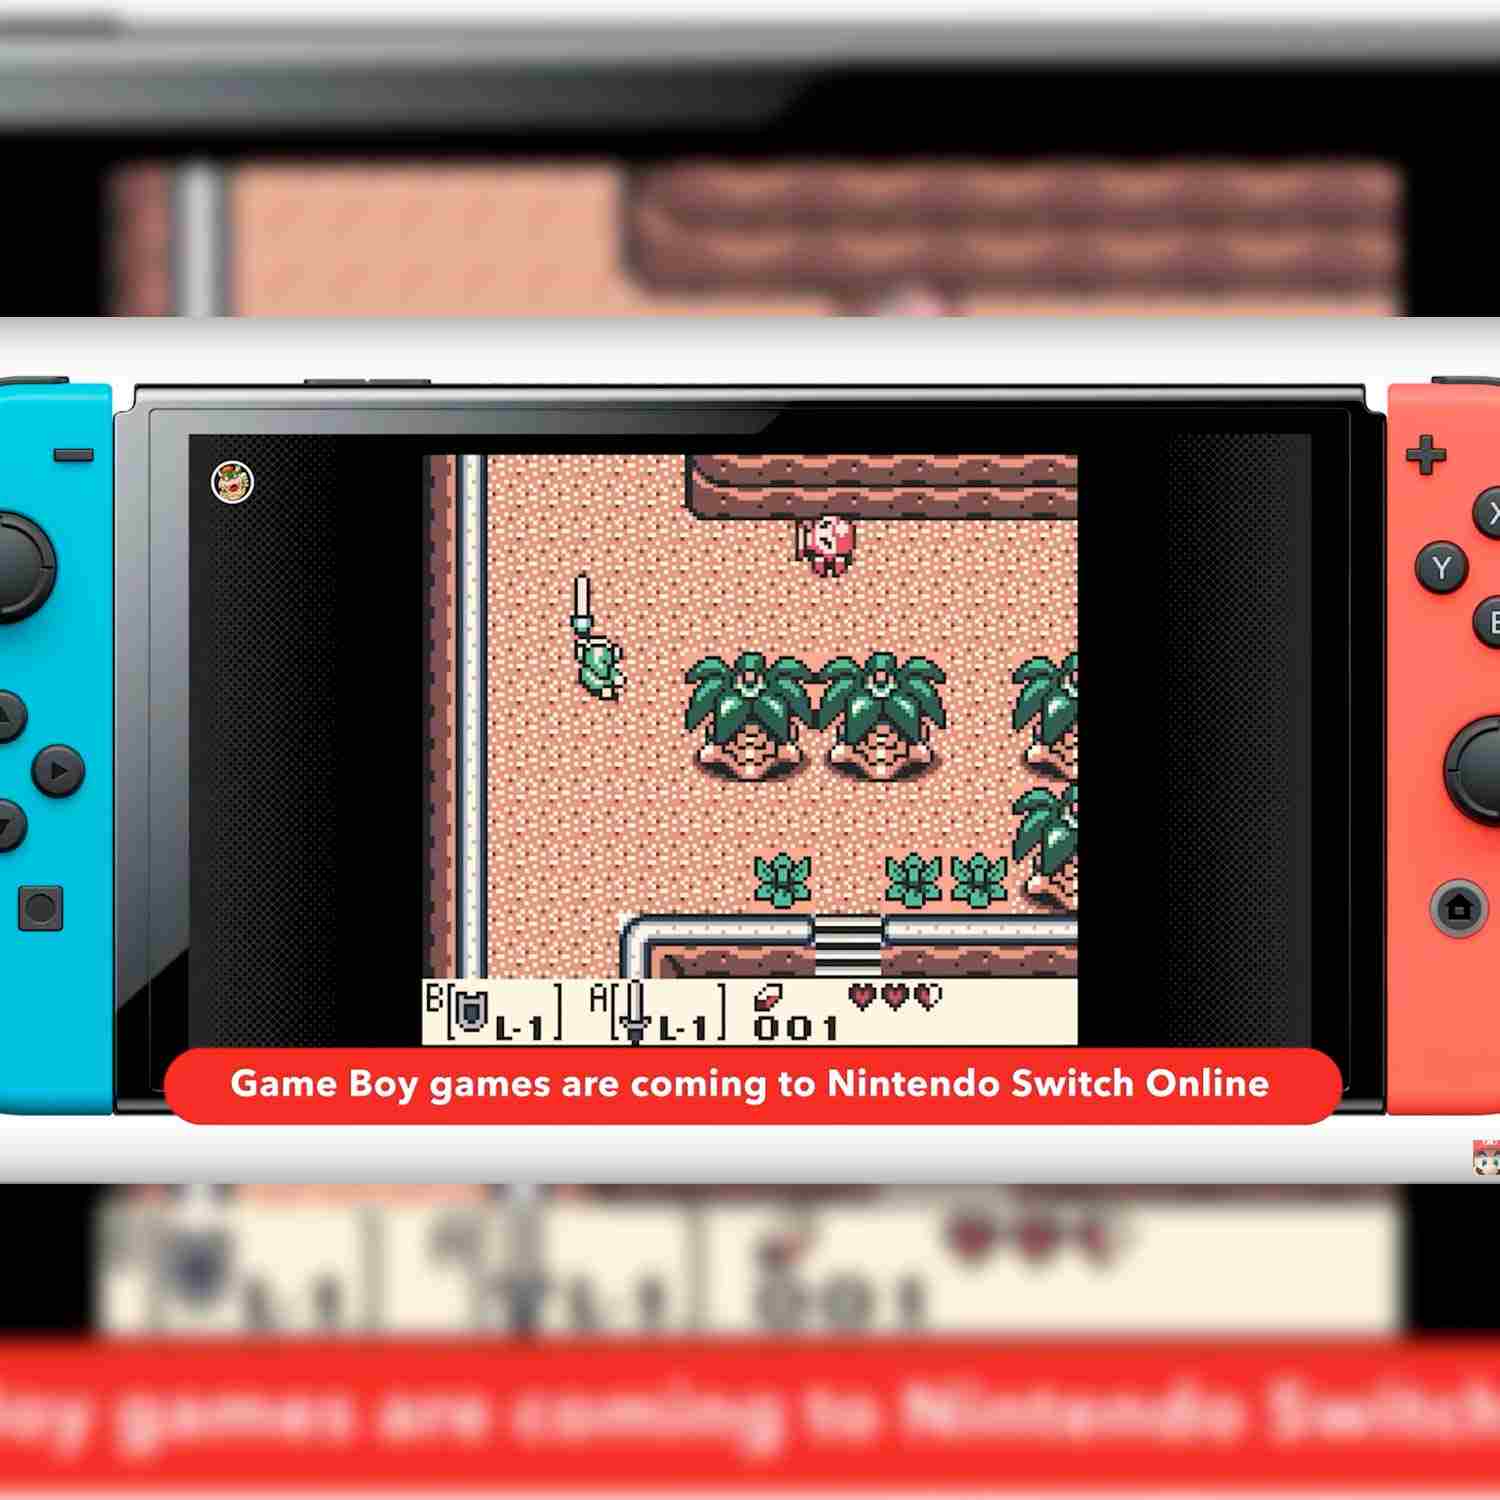 Servicio de Nintendo Switch Online permite jugar juegos de GameBoy